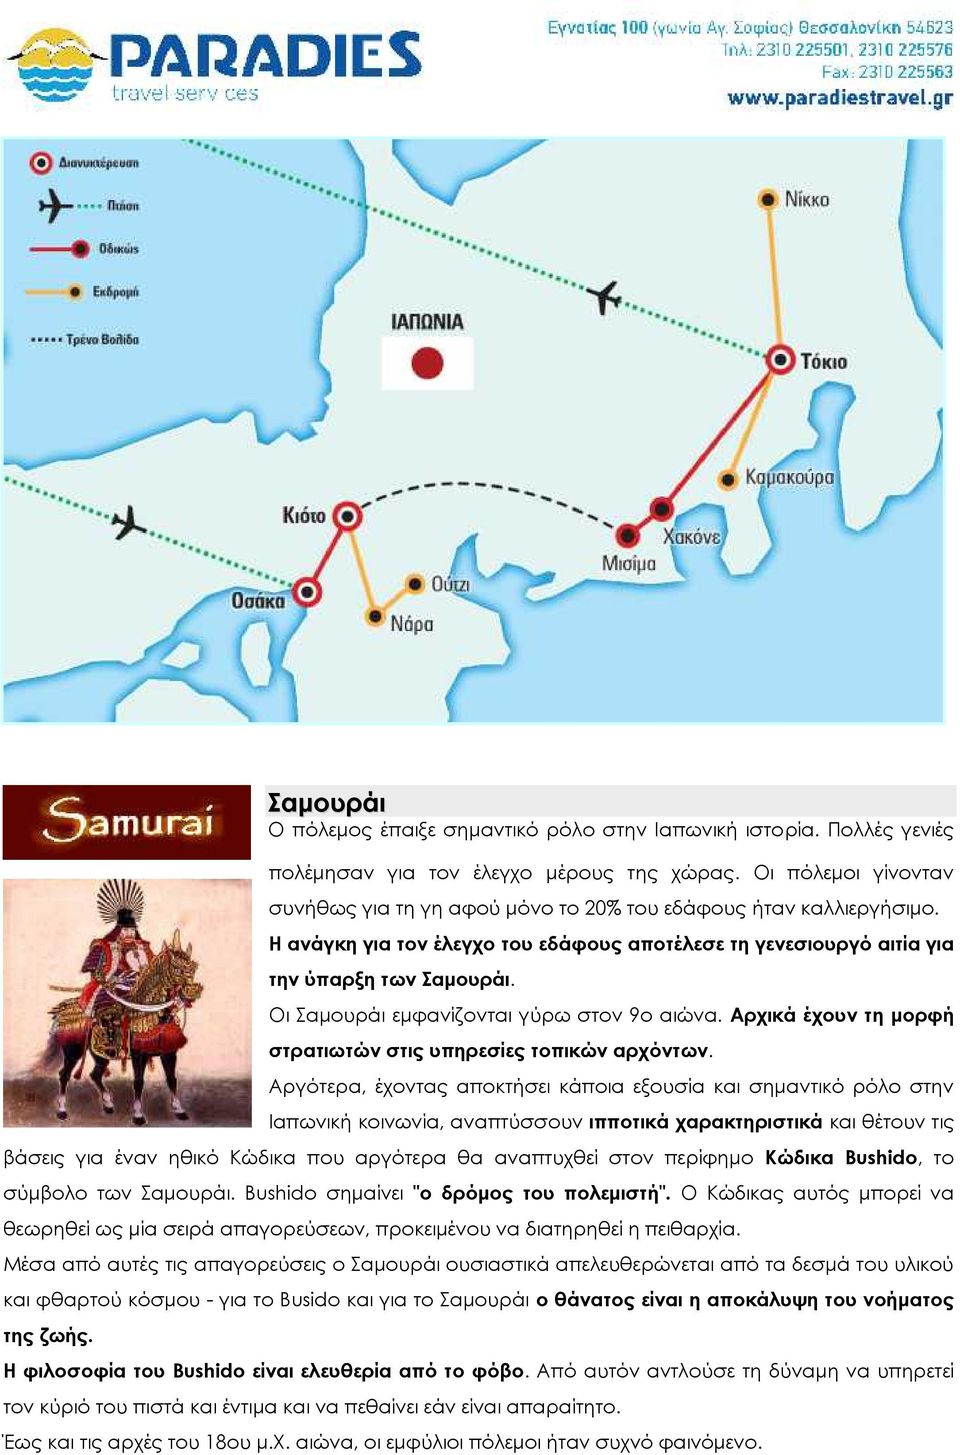 Οι Σαμουράι εμφανίζονται γύρω στον 9ο αιώνα. Αρχικά έχουν τη μορφή στρατιωτών στις υπηρεσίες τοπικών αρχόντων.